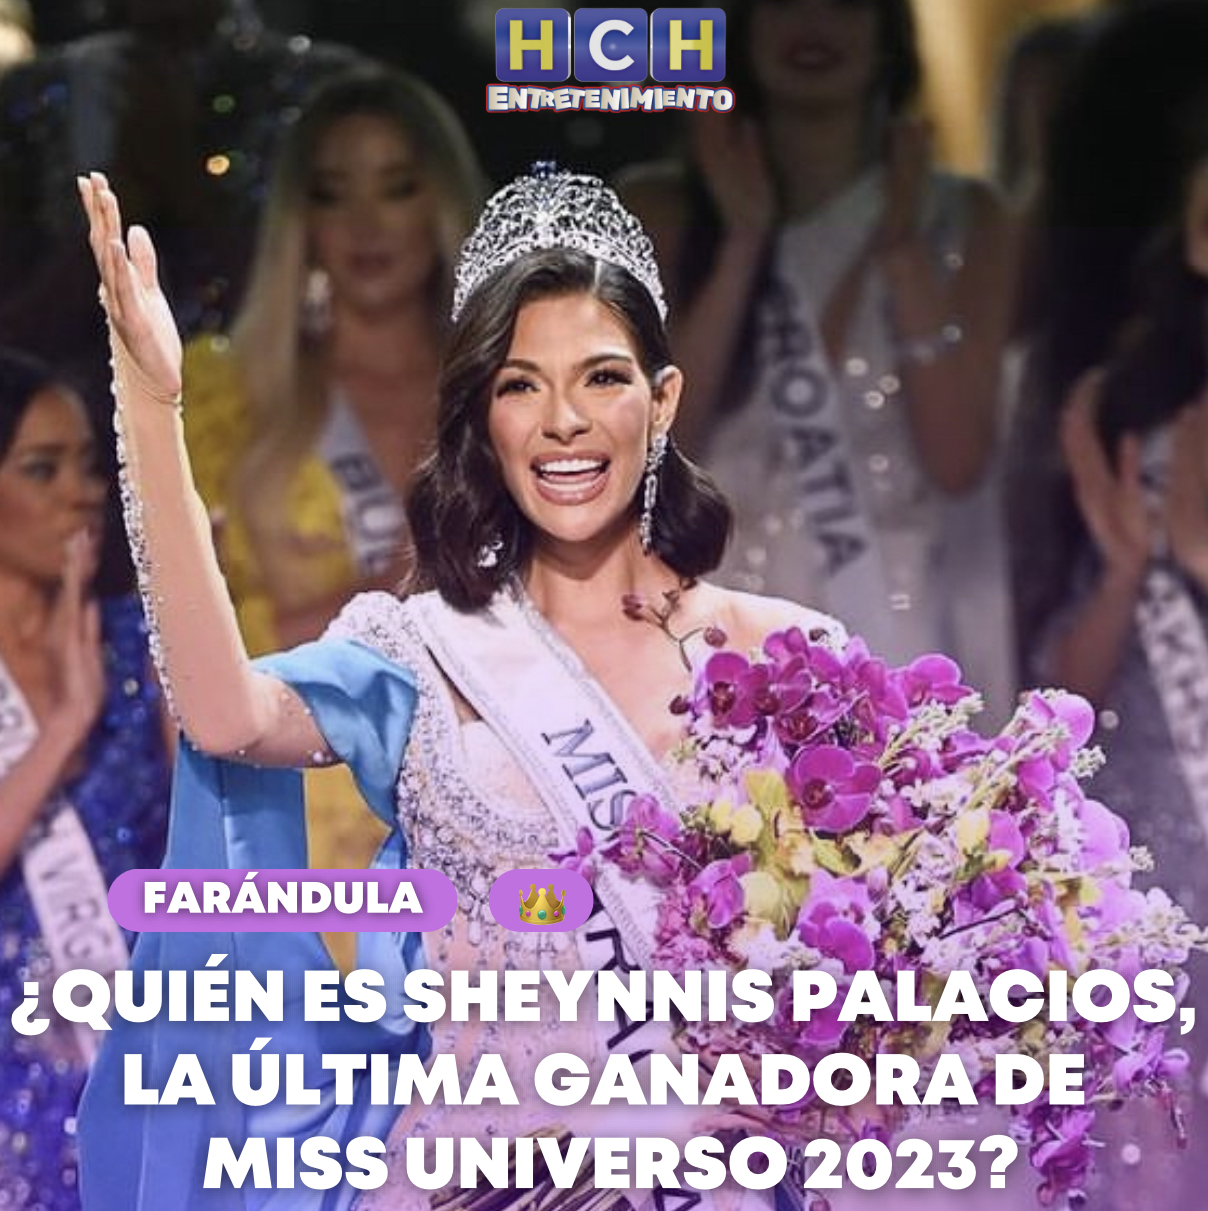 Quién Es Sheynnis Palacios La última Ganadora De Miss Universo 2023 Hch Tv